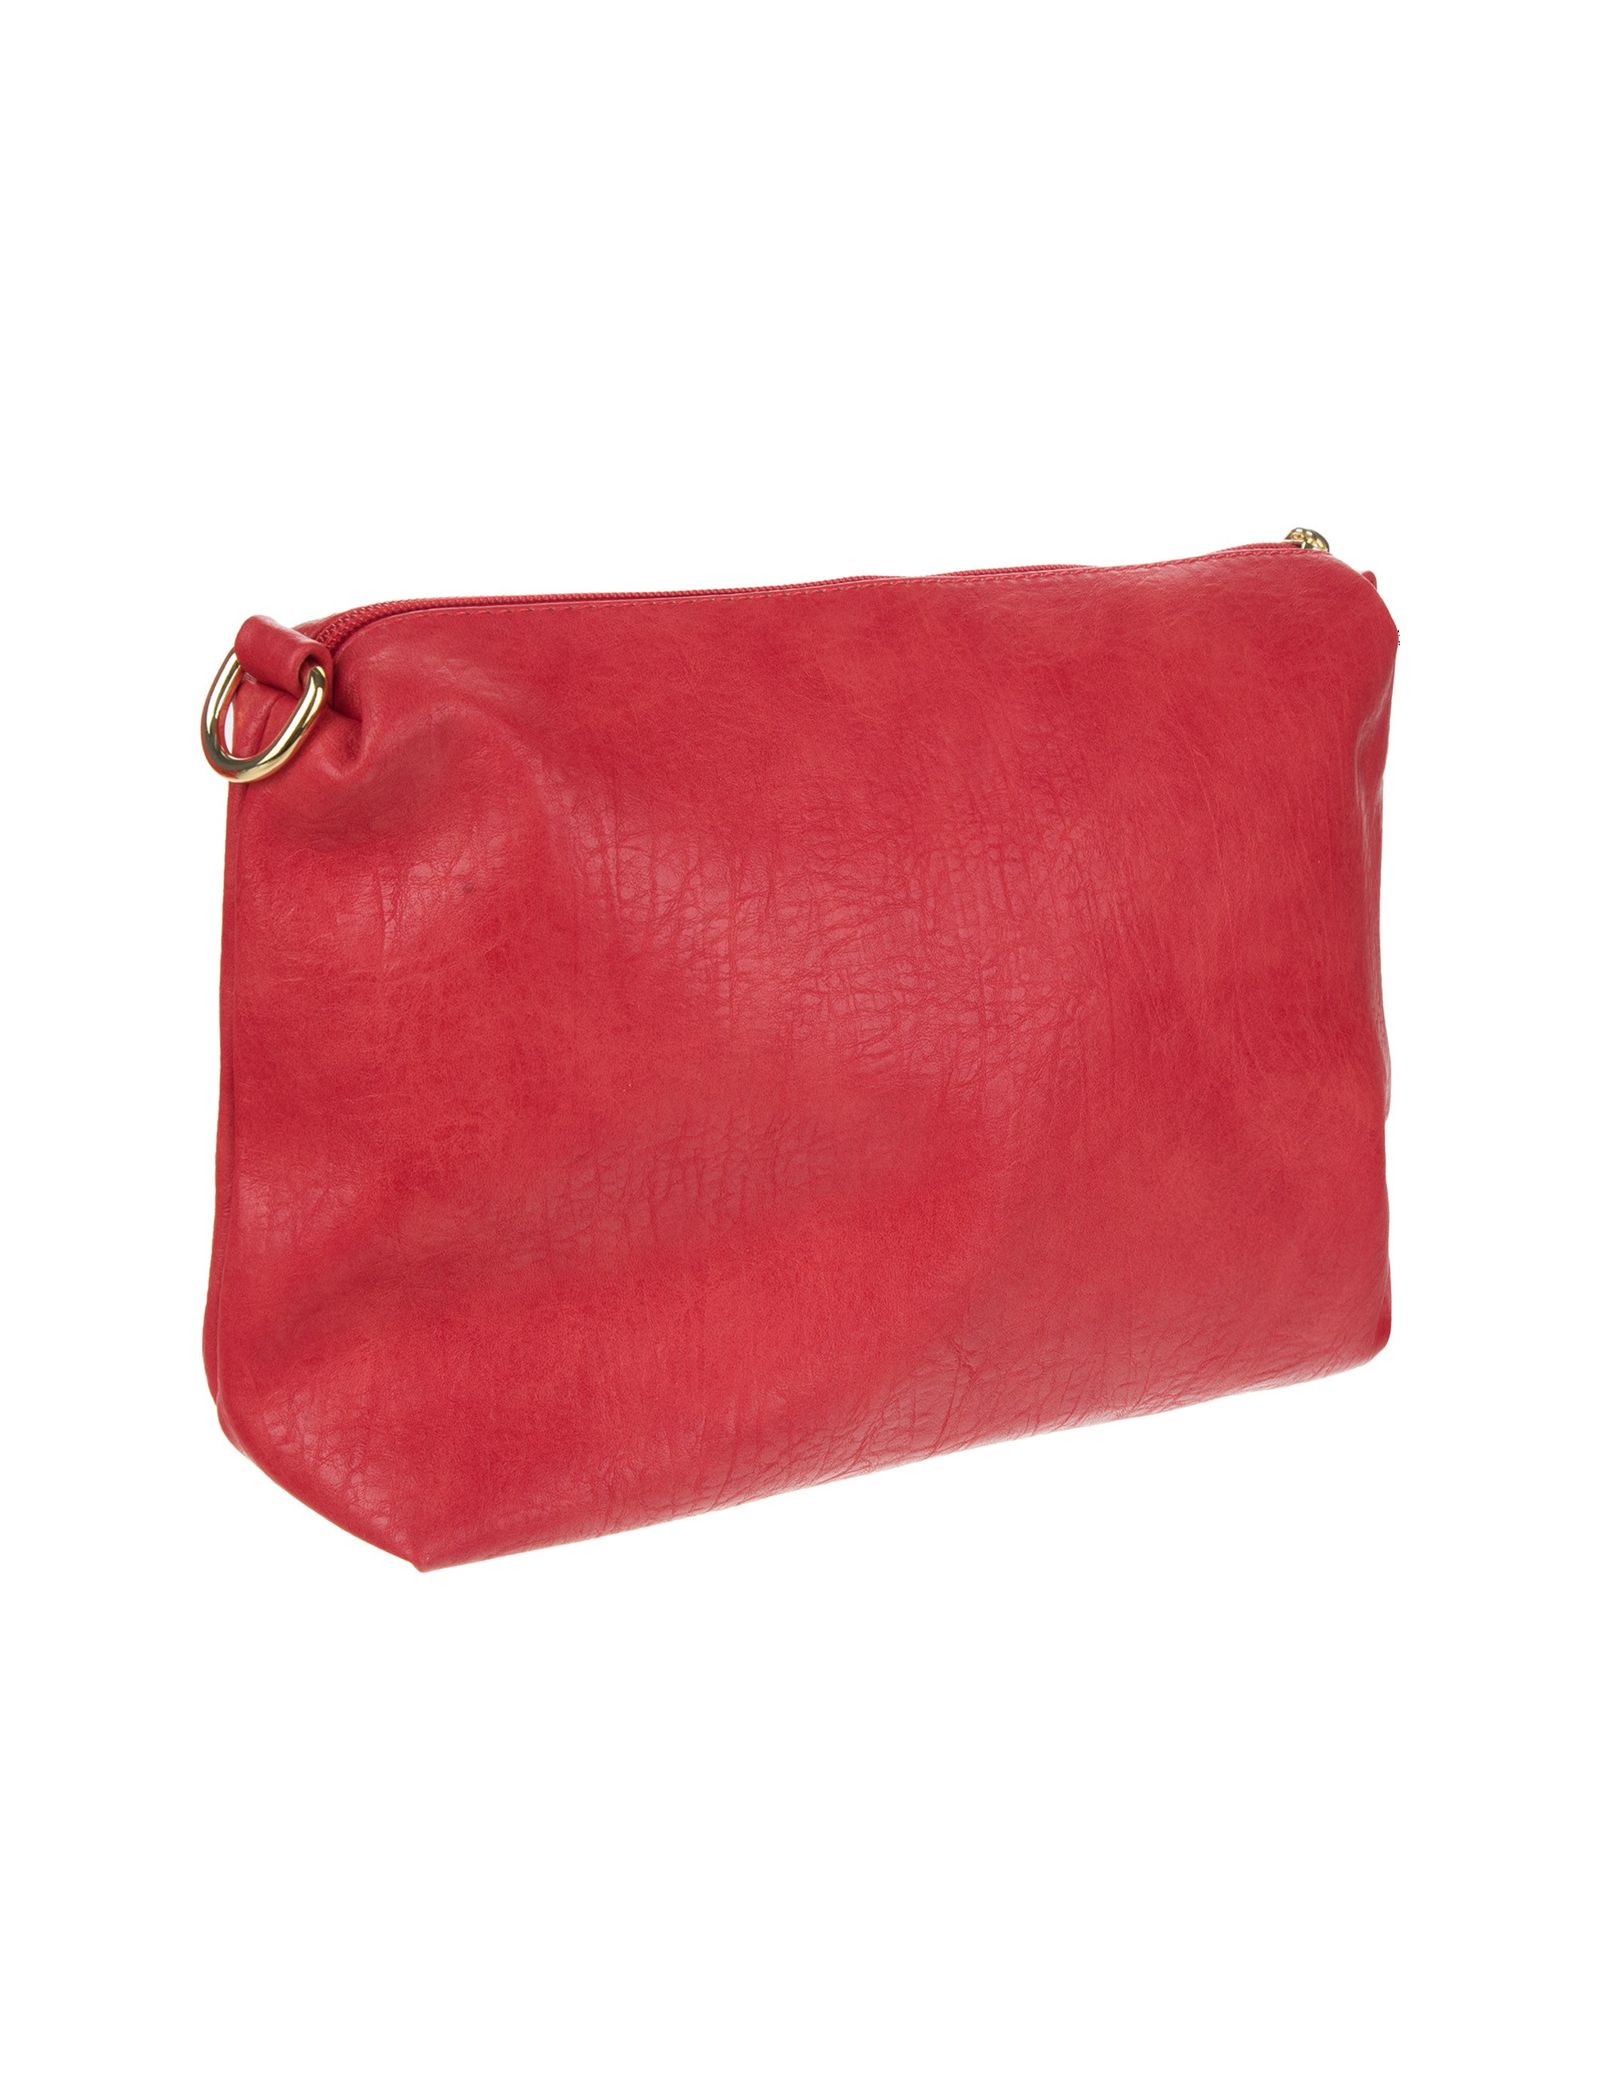 کیف دستی روزمره زنانه - دادلین تک سایز - قرمز - 10